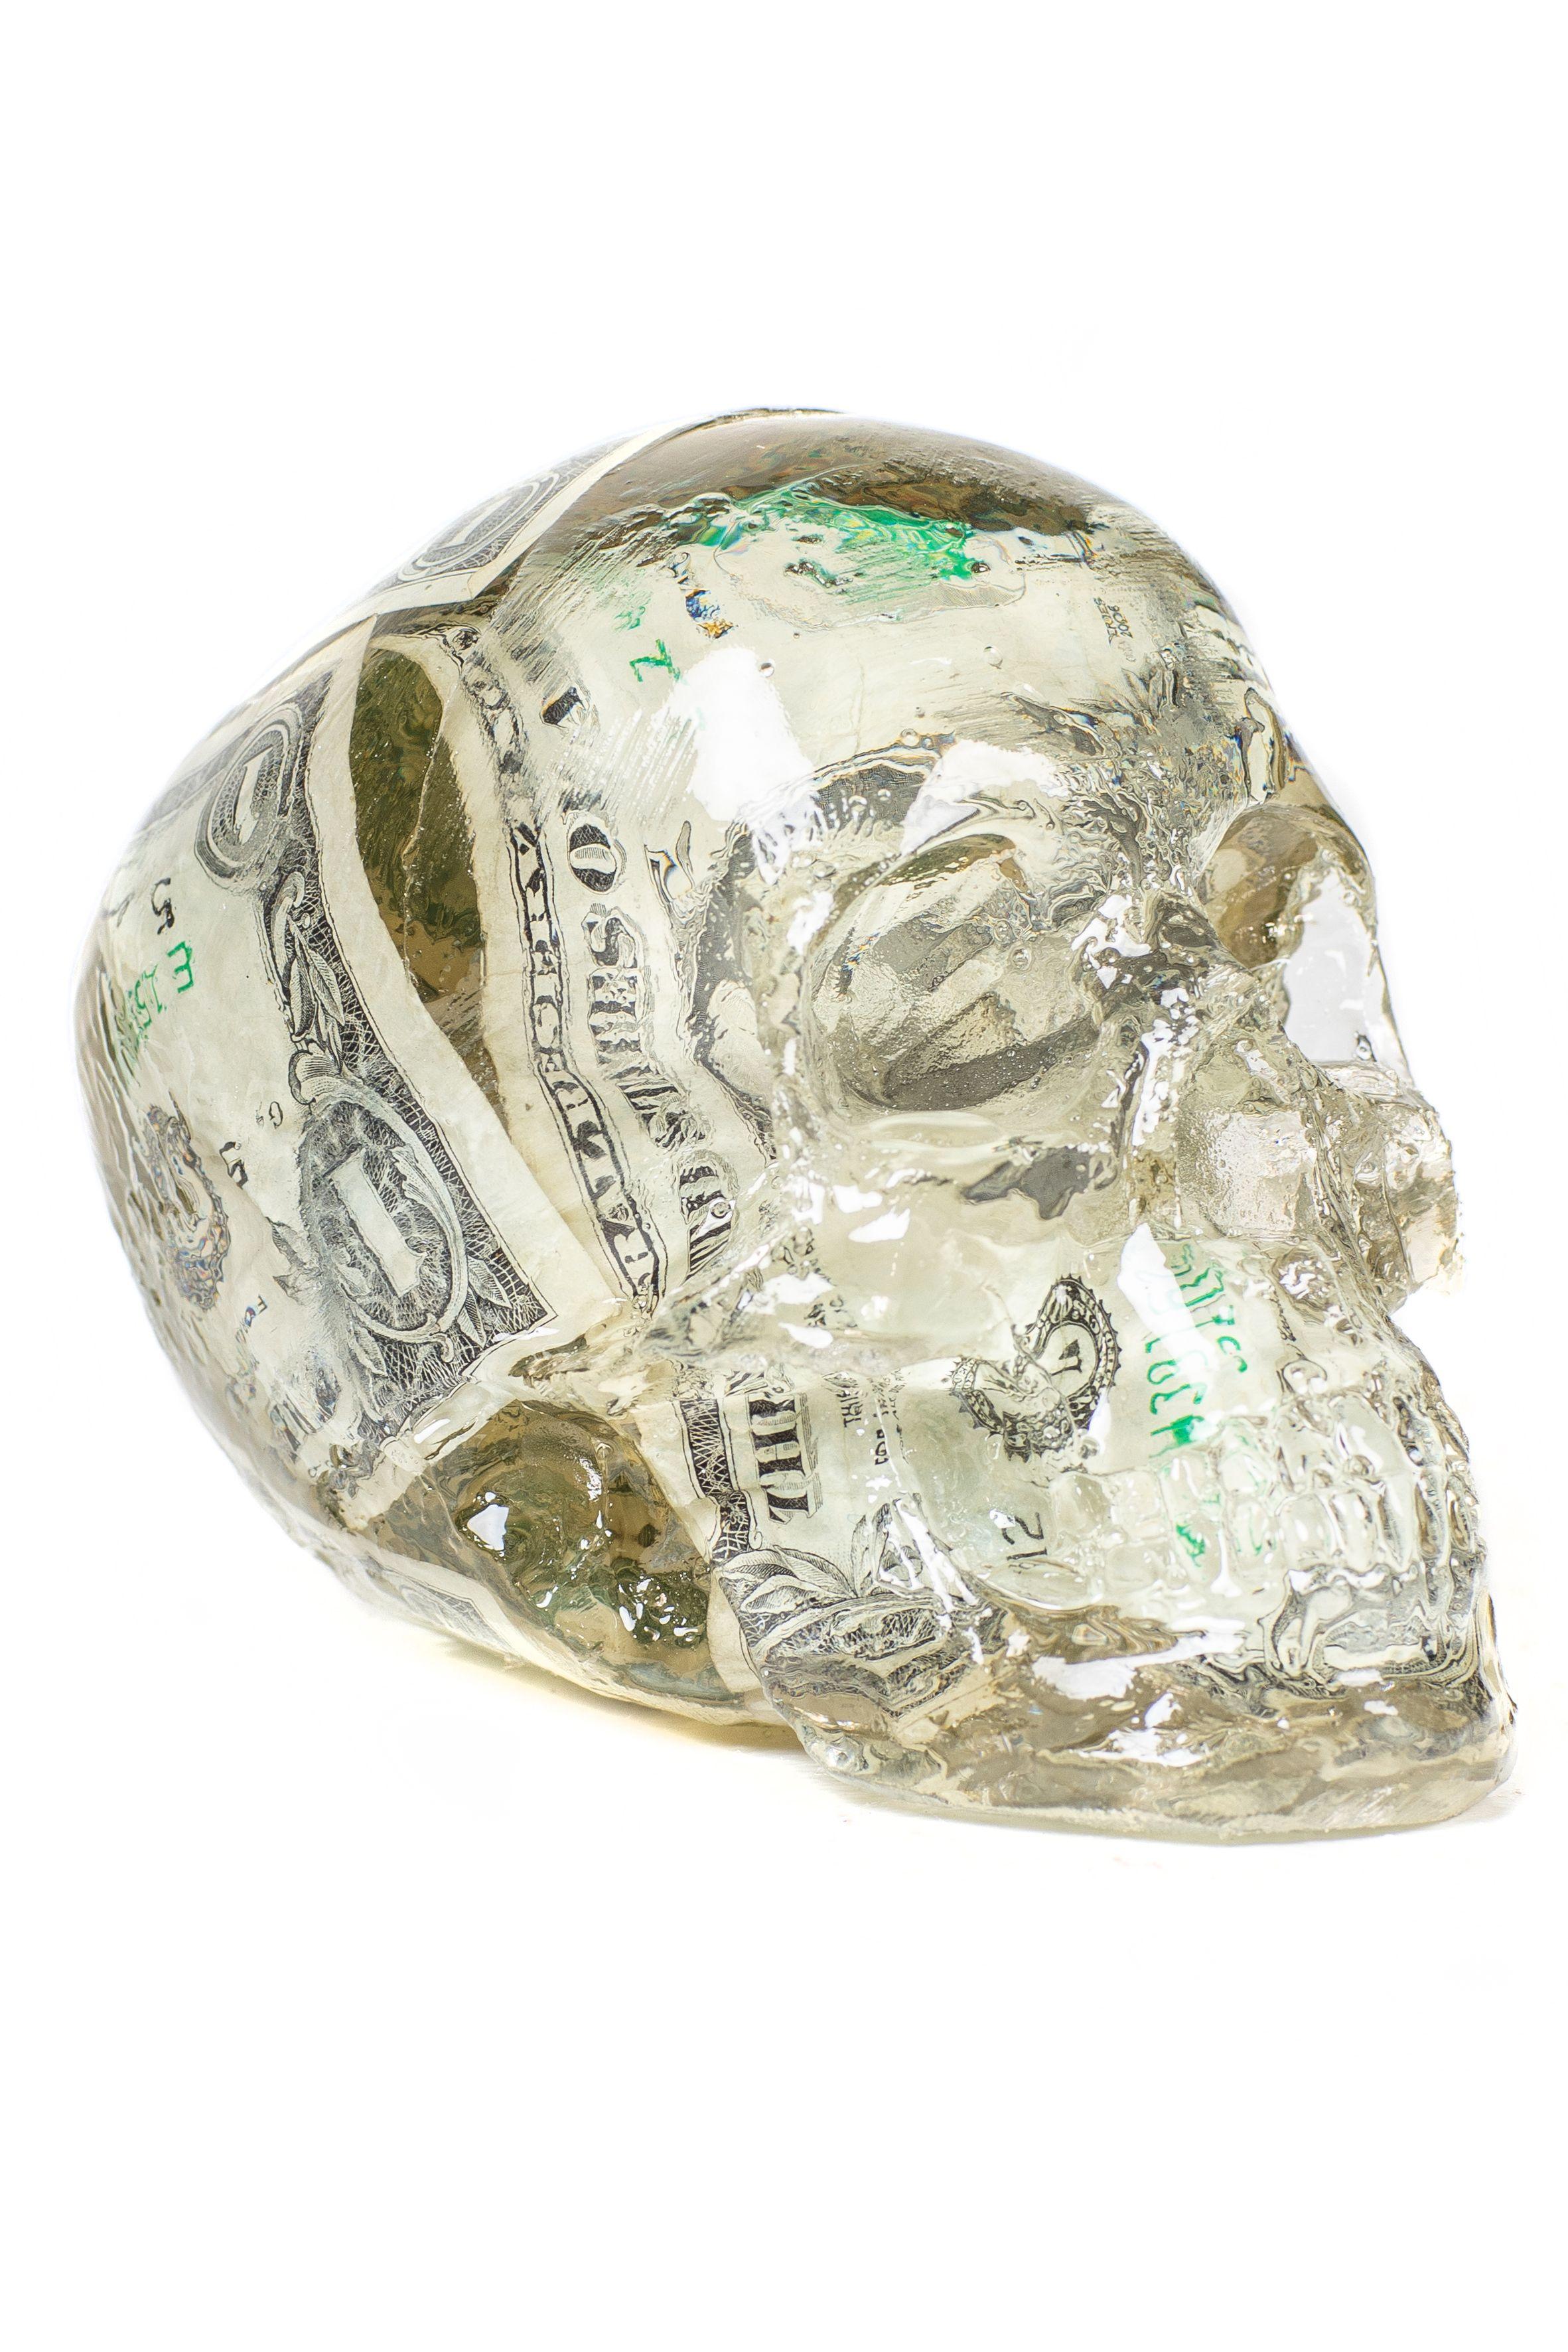 Alben Figurative Sculpture - Skull Dollars - Pop Art Sculptures